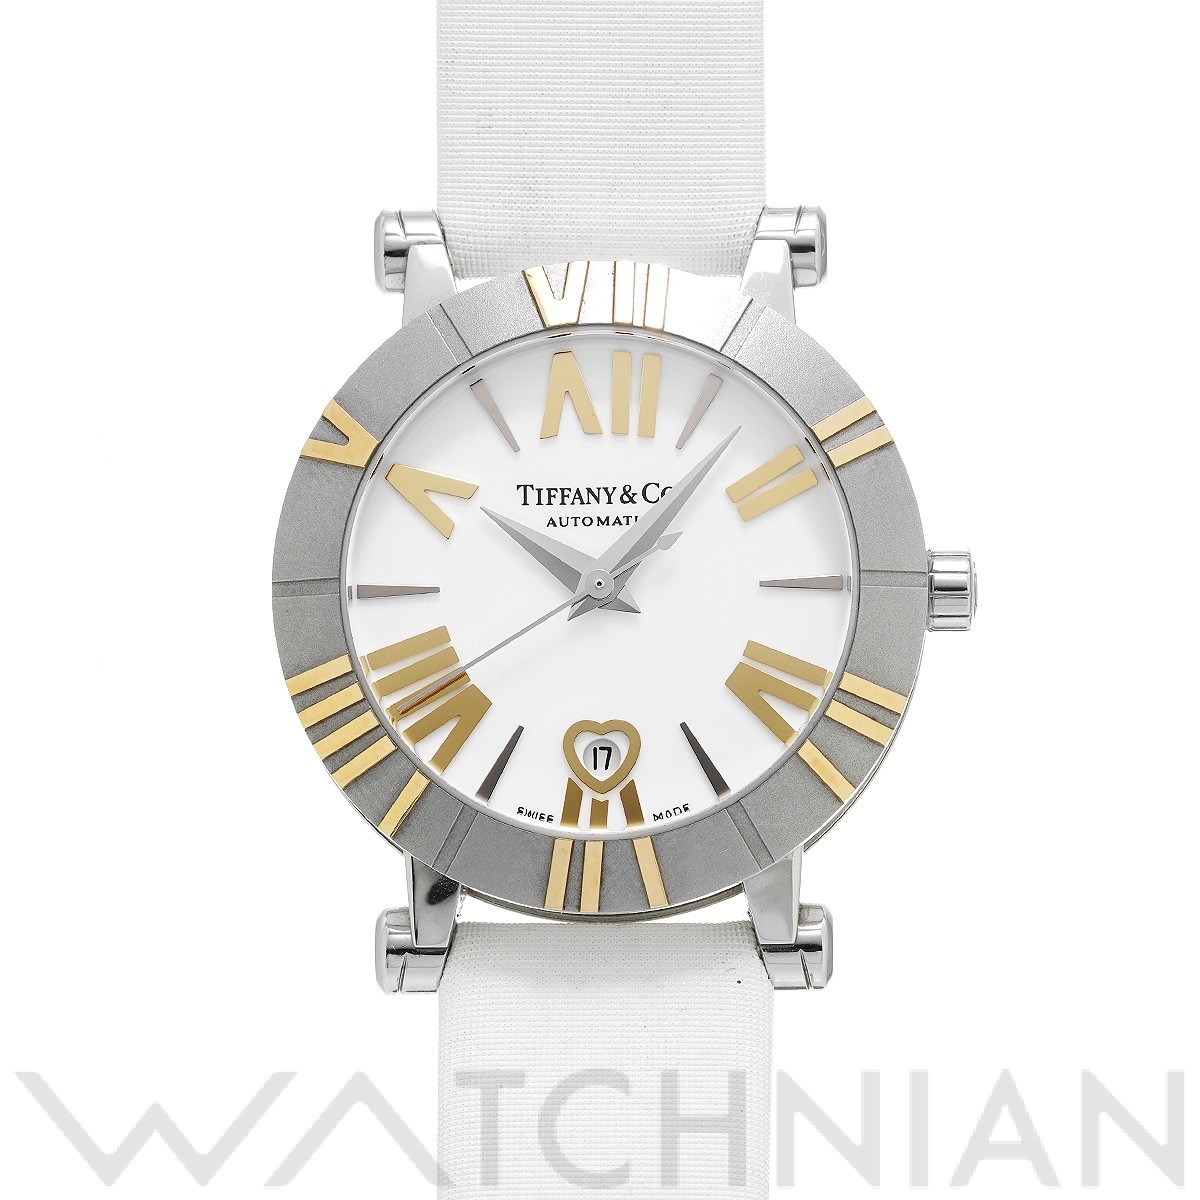 ティファニー TIFFANY&Co. アトラス Z1300 デイト クオーツ 腕時計 SS シルバー×ホワイトアナログ表示カレンダータイプ